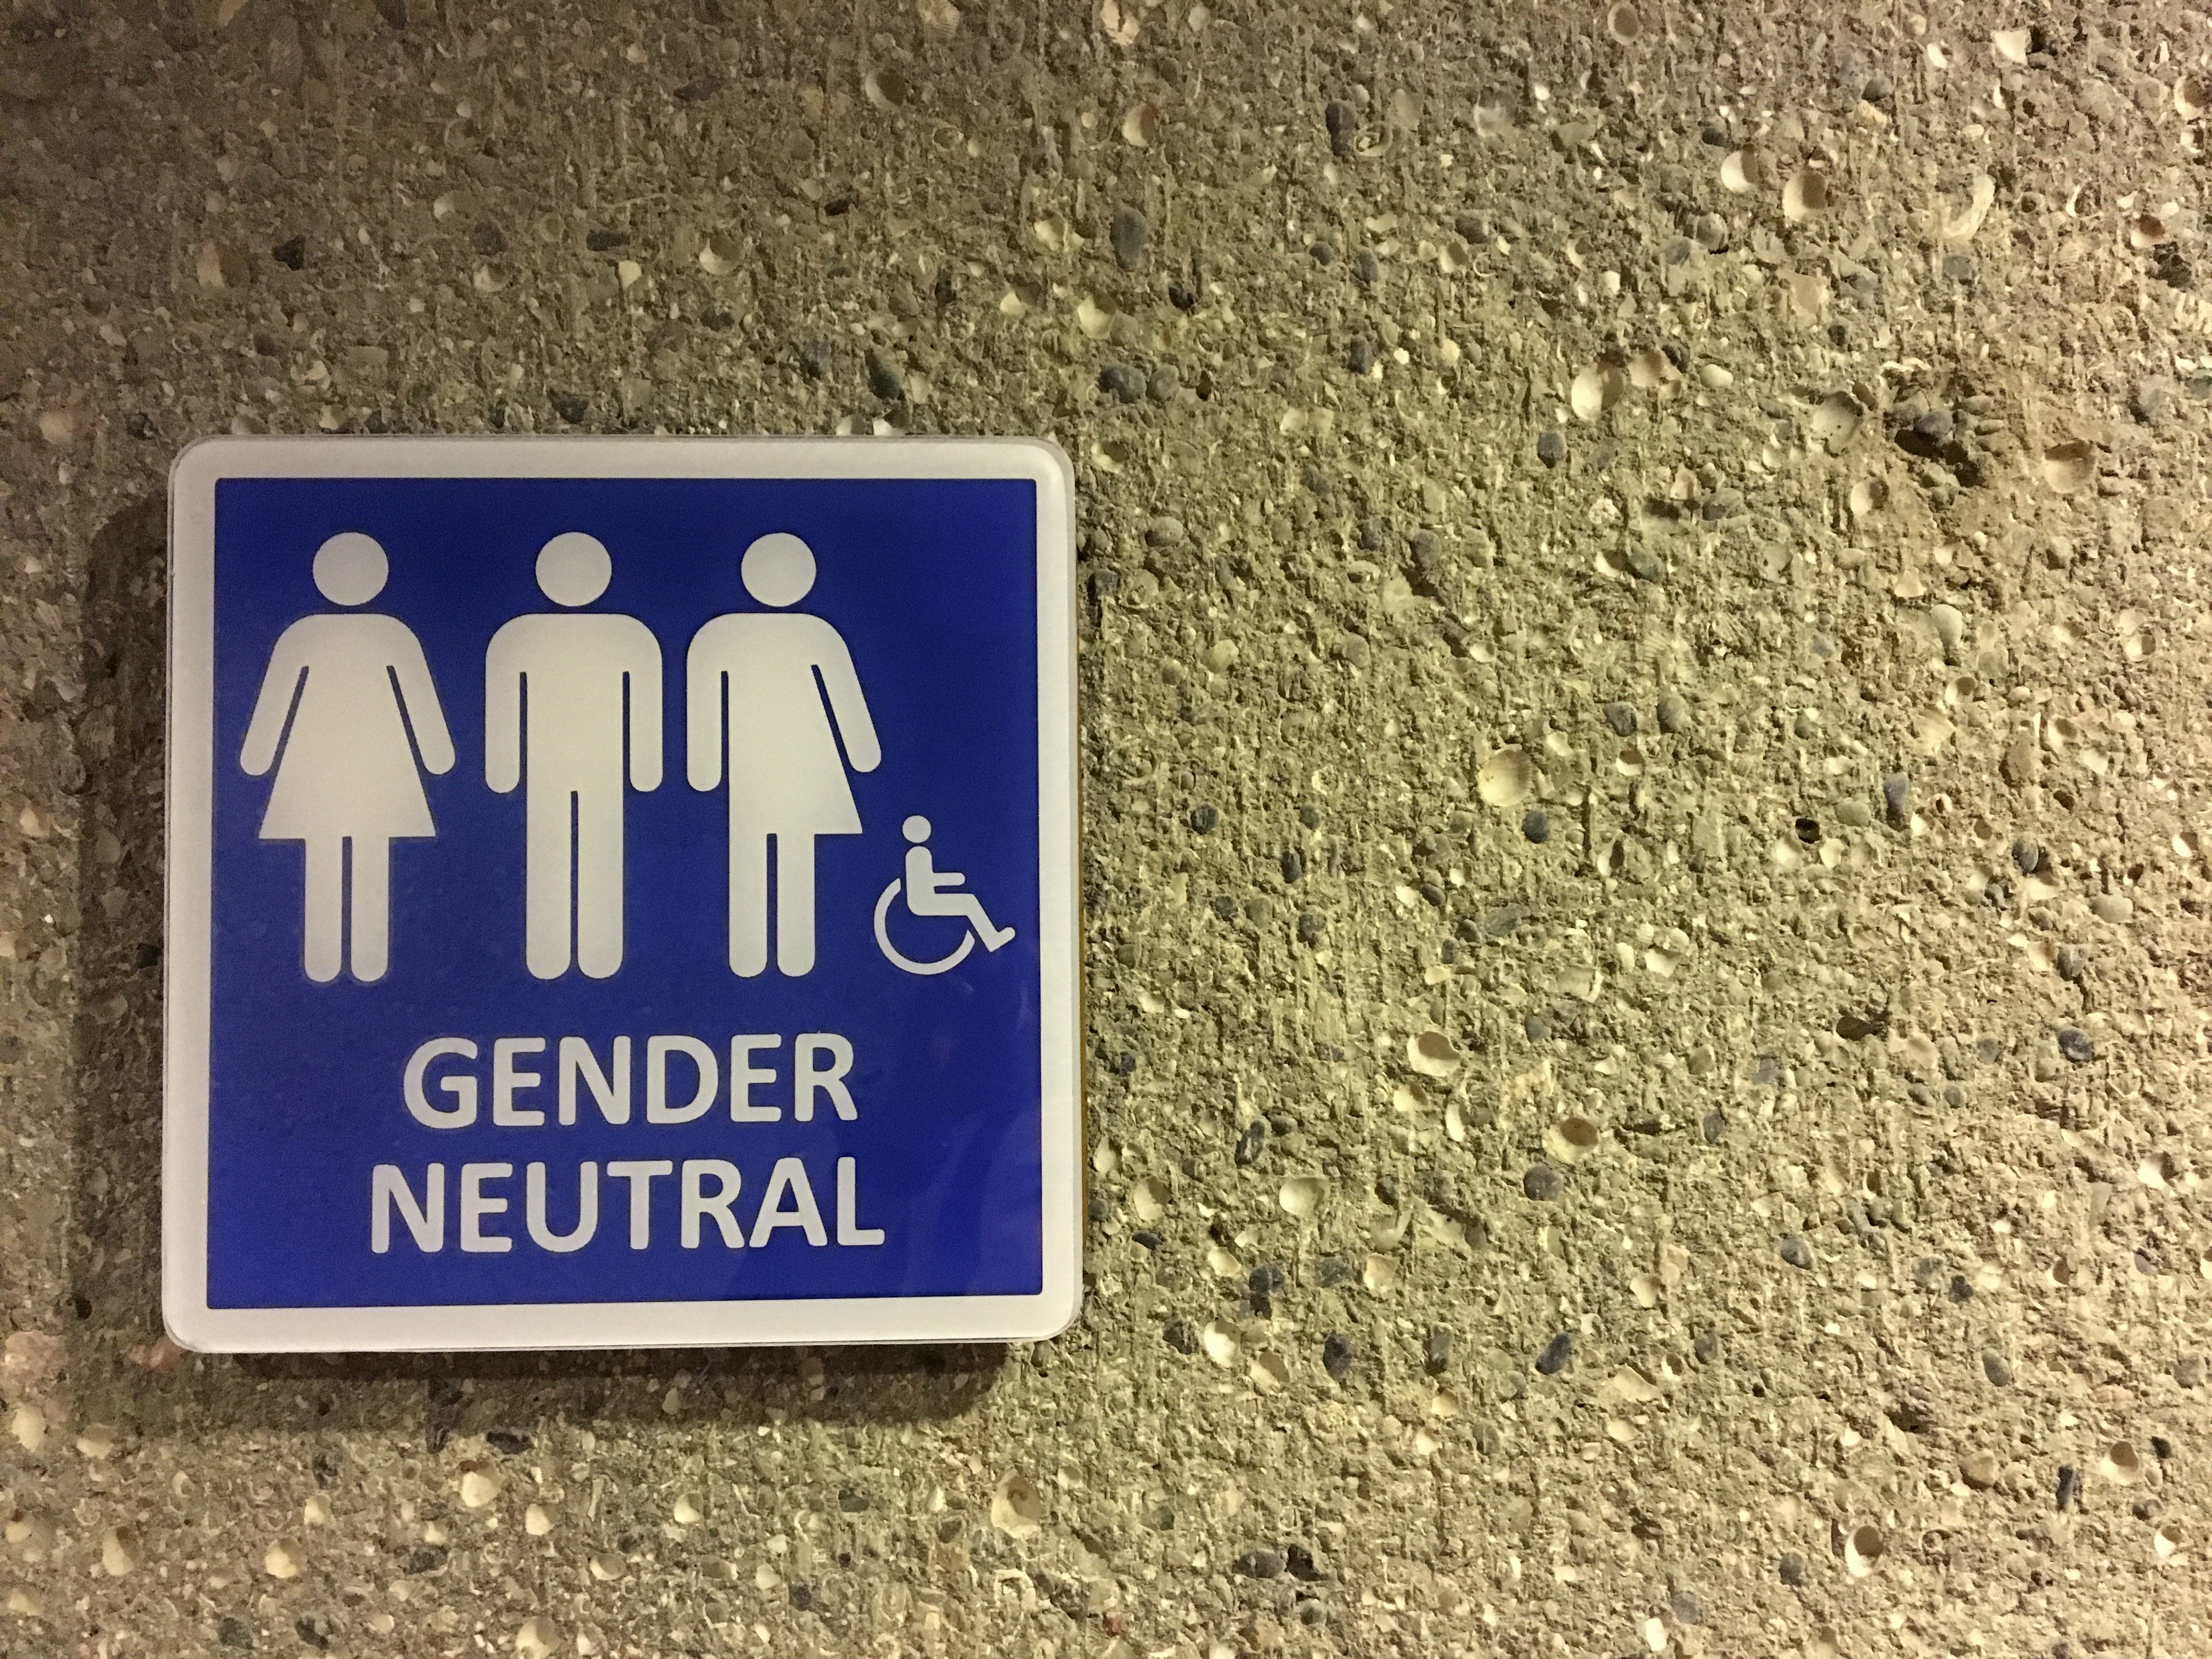 gender neutral restroom